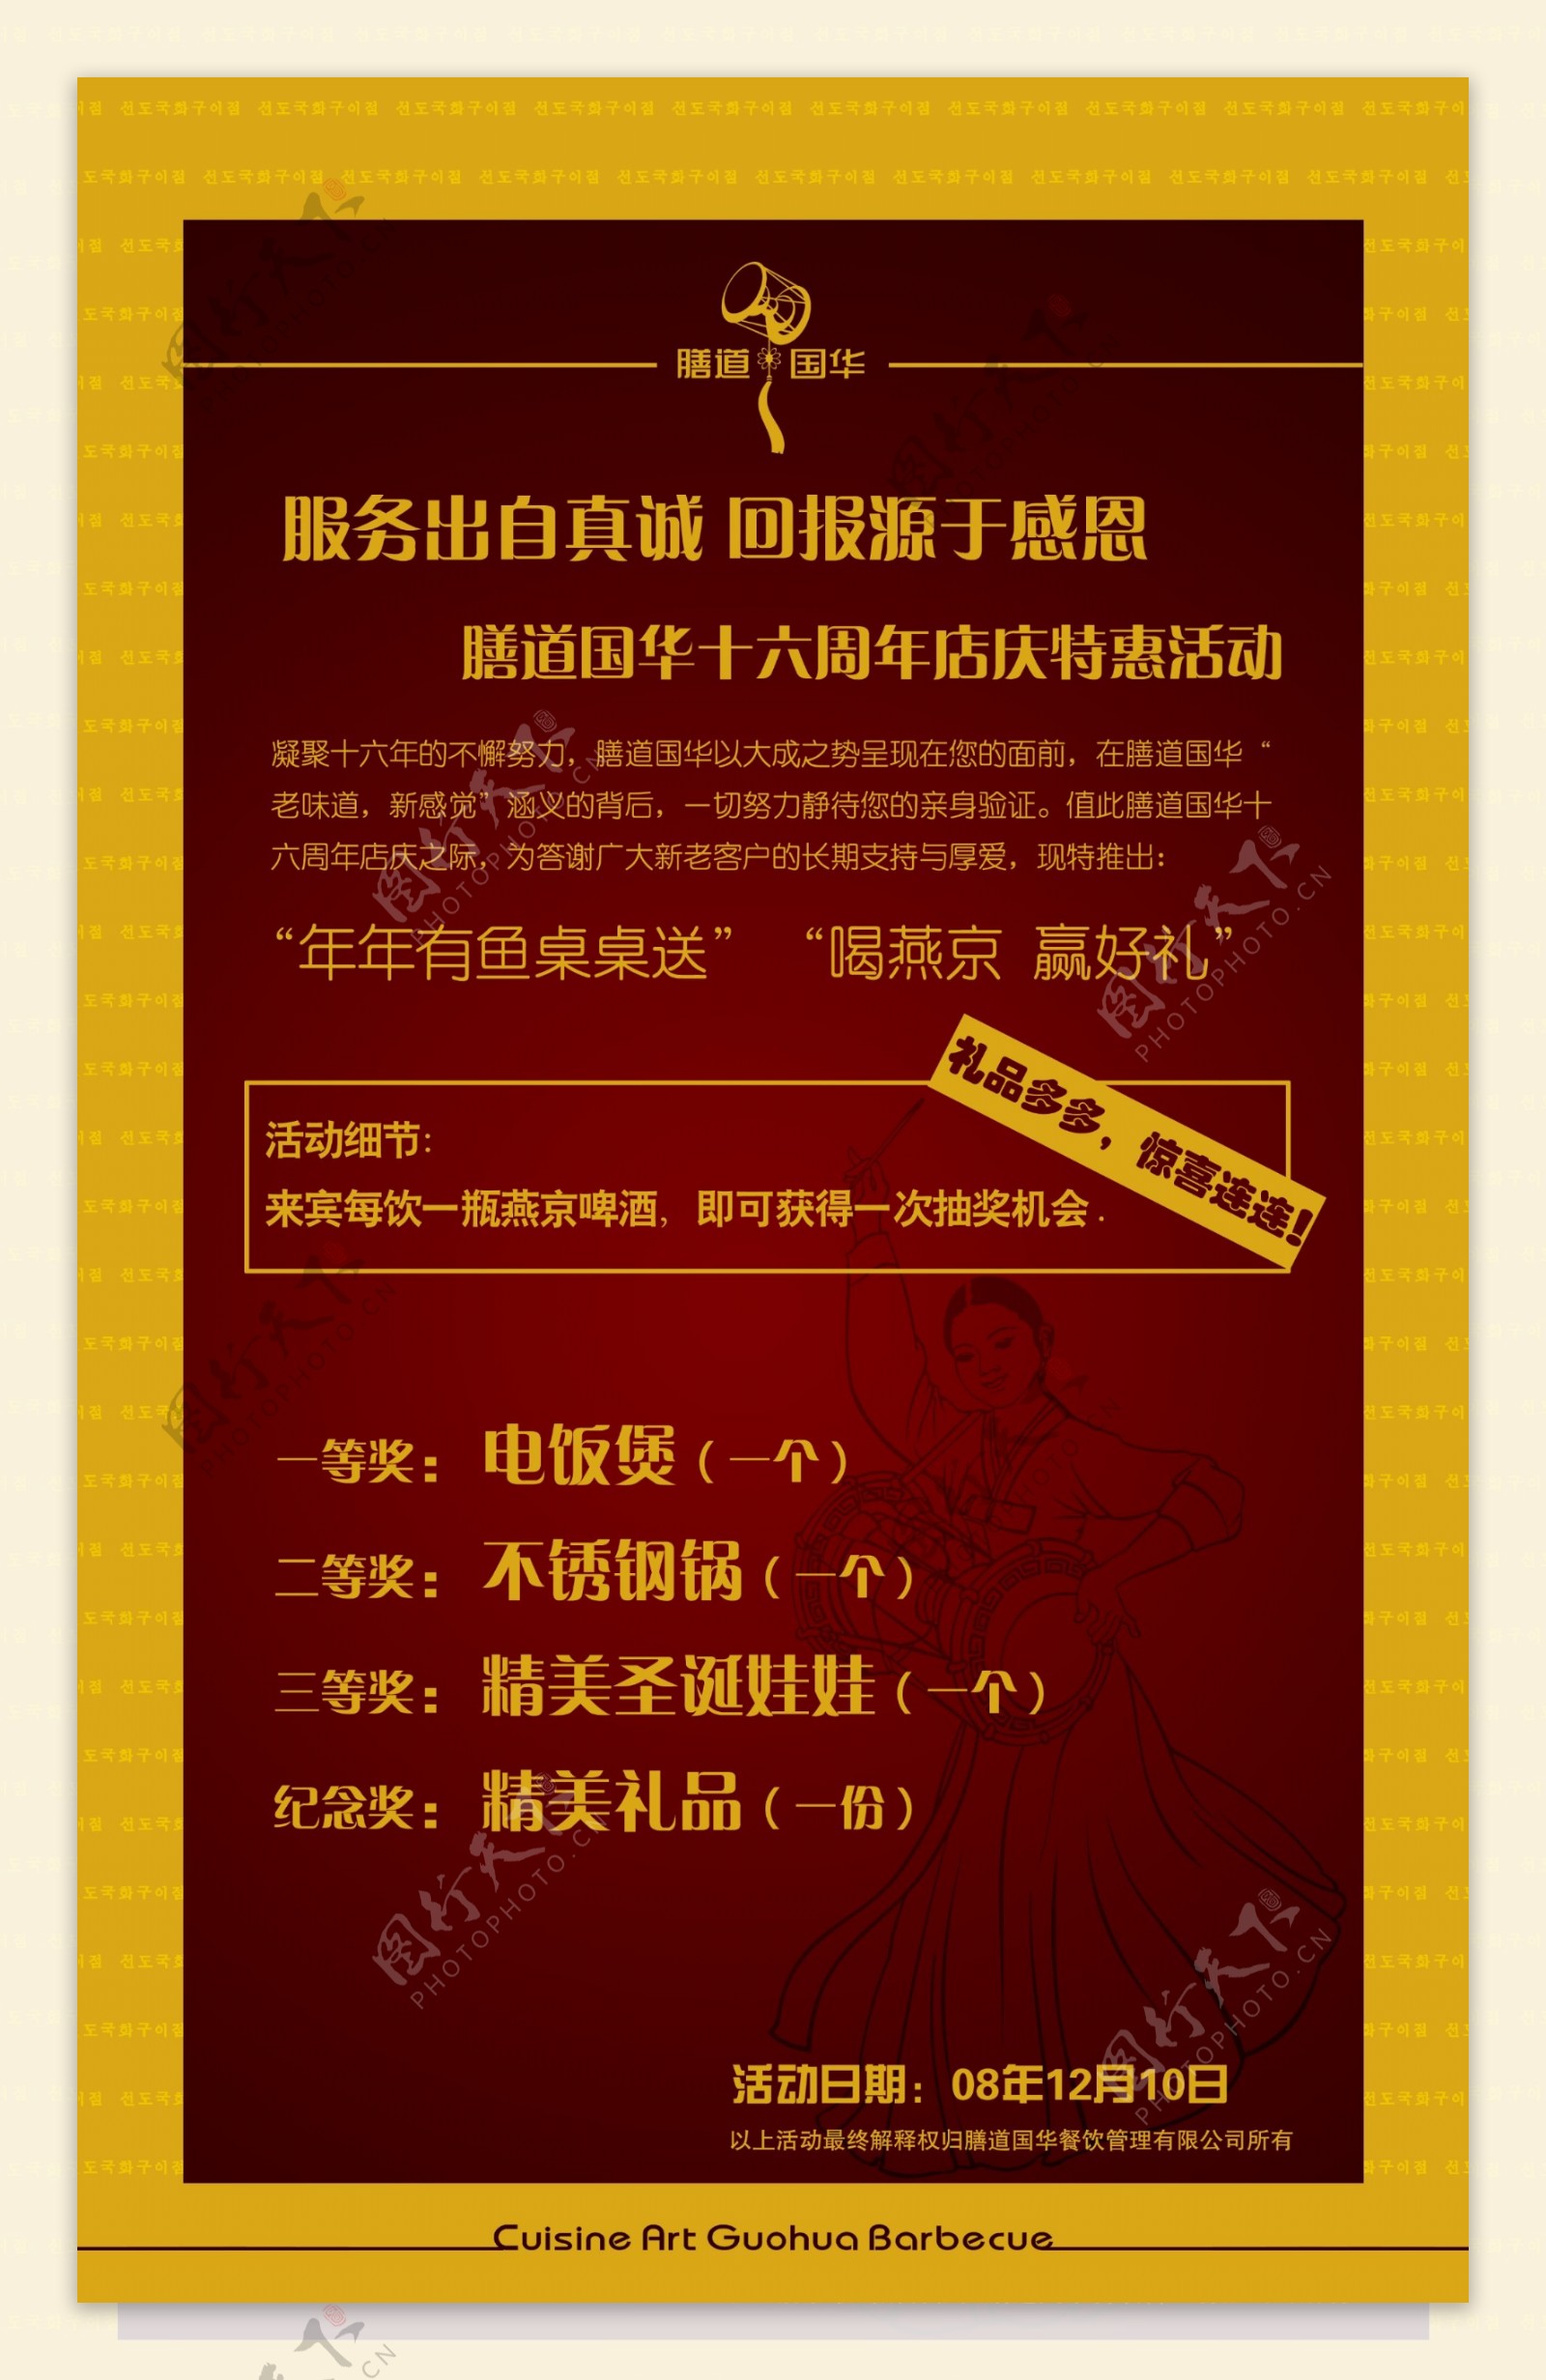 餐饮菜谱设计海报设计psd源文件广告设计psd素材菜谱海报时尚中国风周年庆